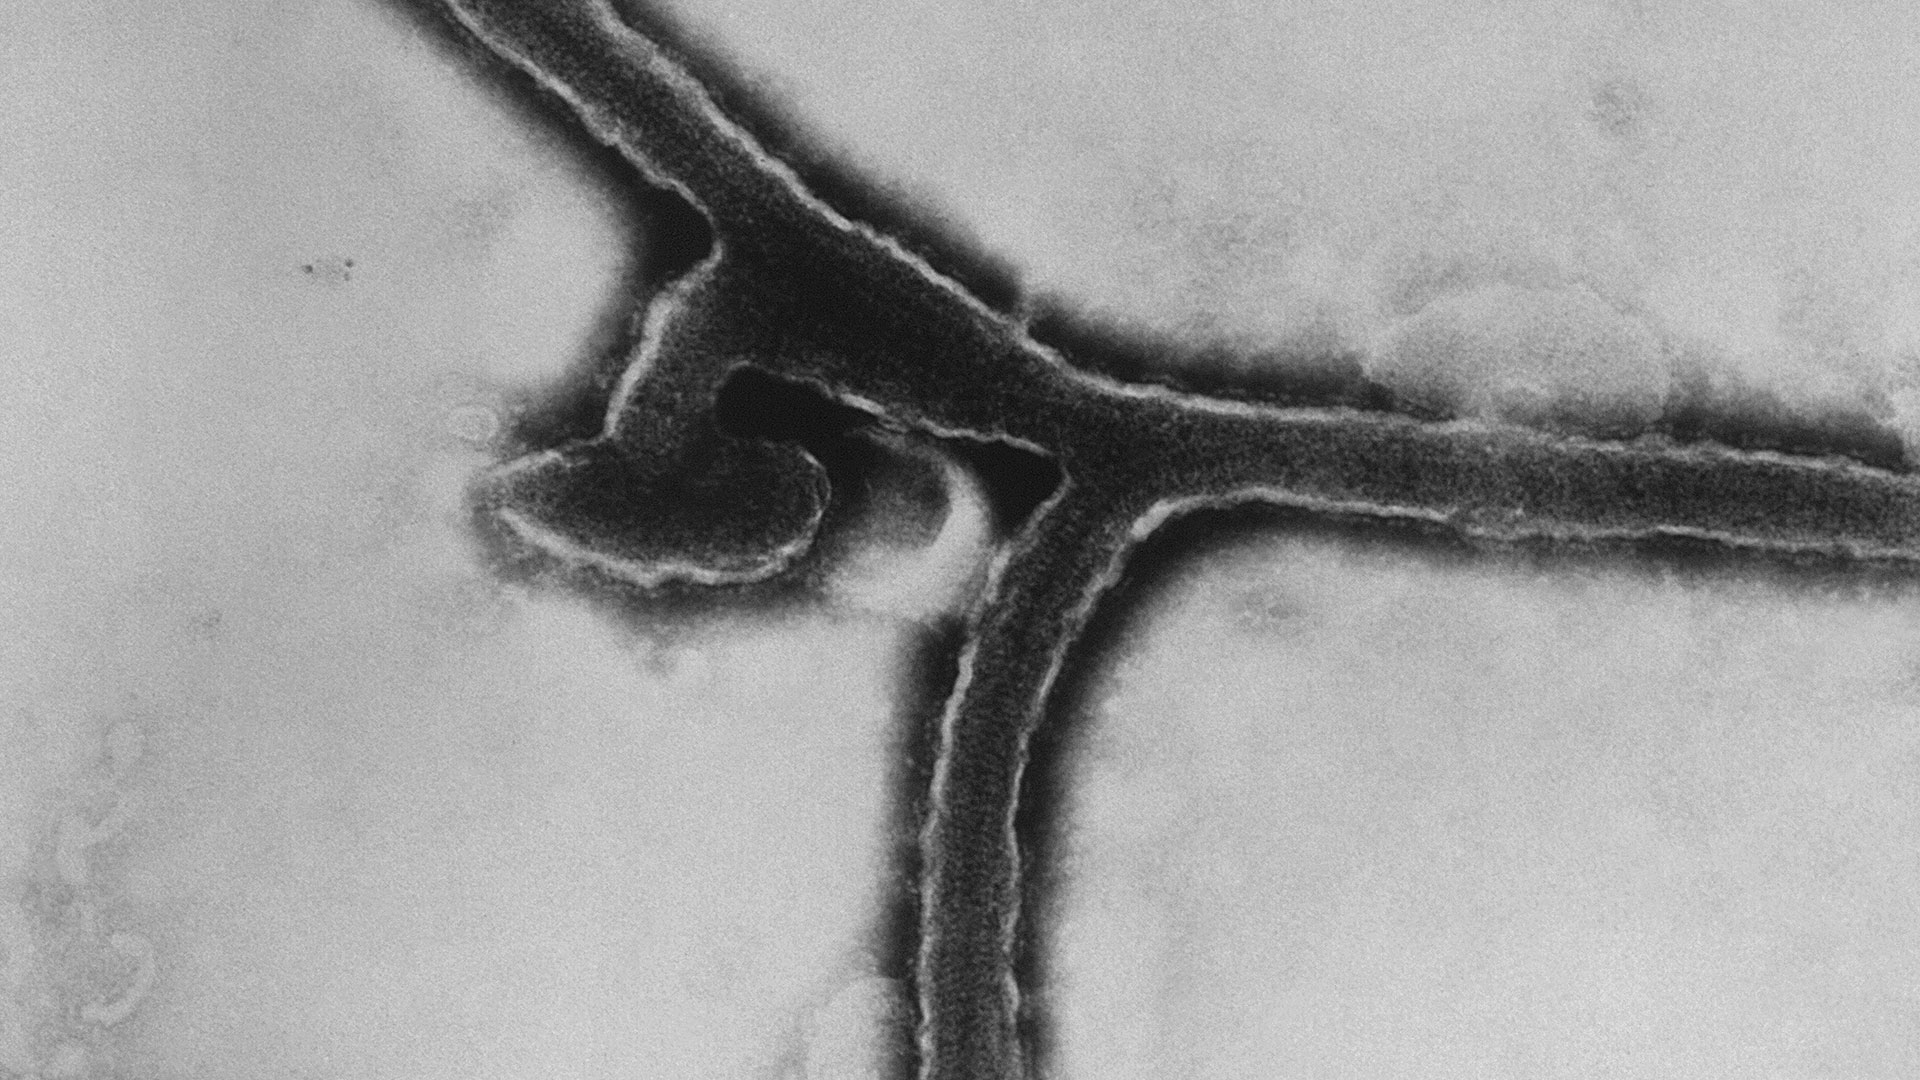 La enfermedad del virus de Marburgo es generada por el virus transmitido por animales de la misma familia Filoviridae del virus del Ébola. (Photo by Smith Collection/Gado/Getty Images).